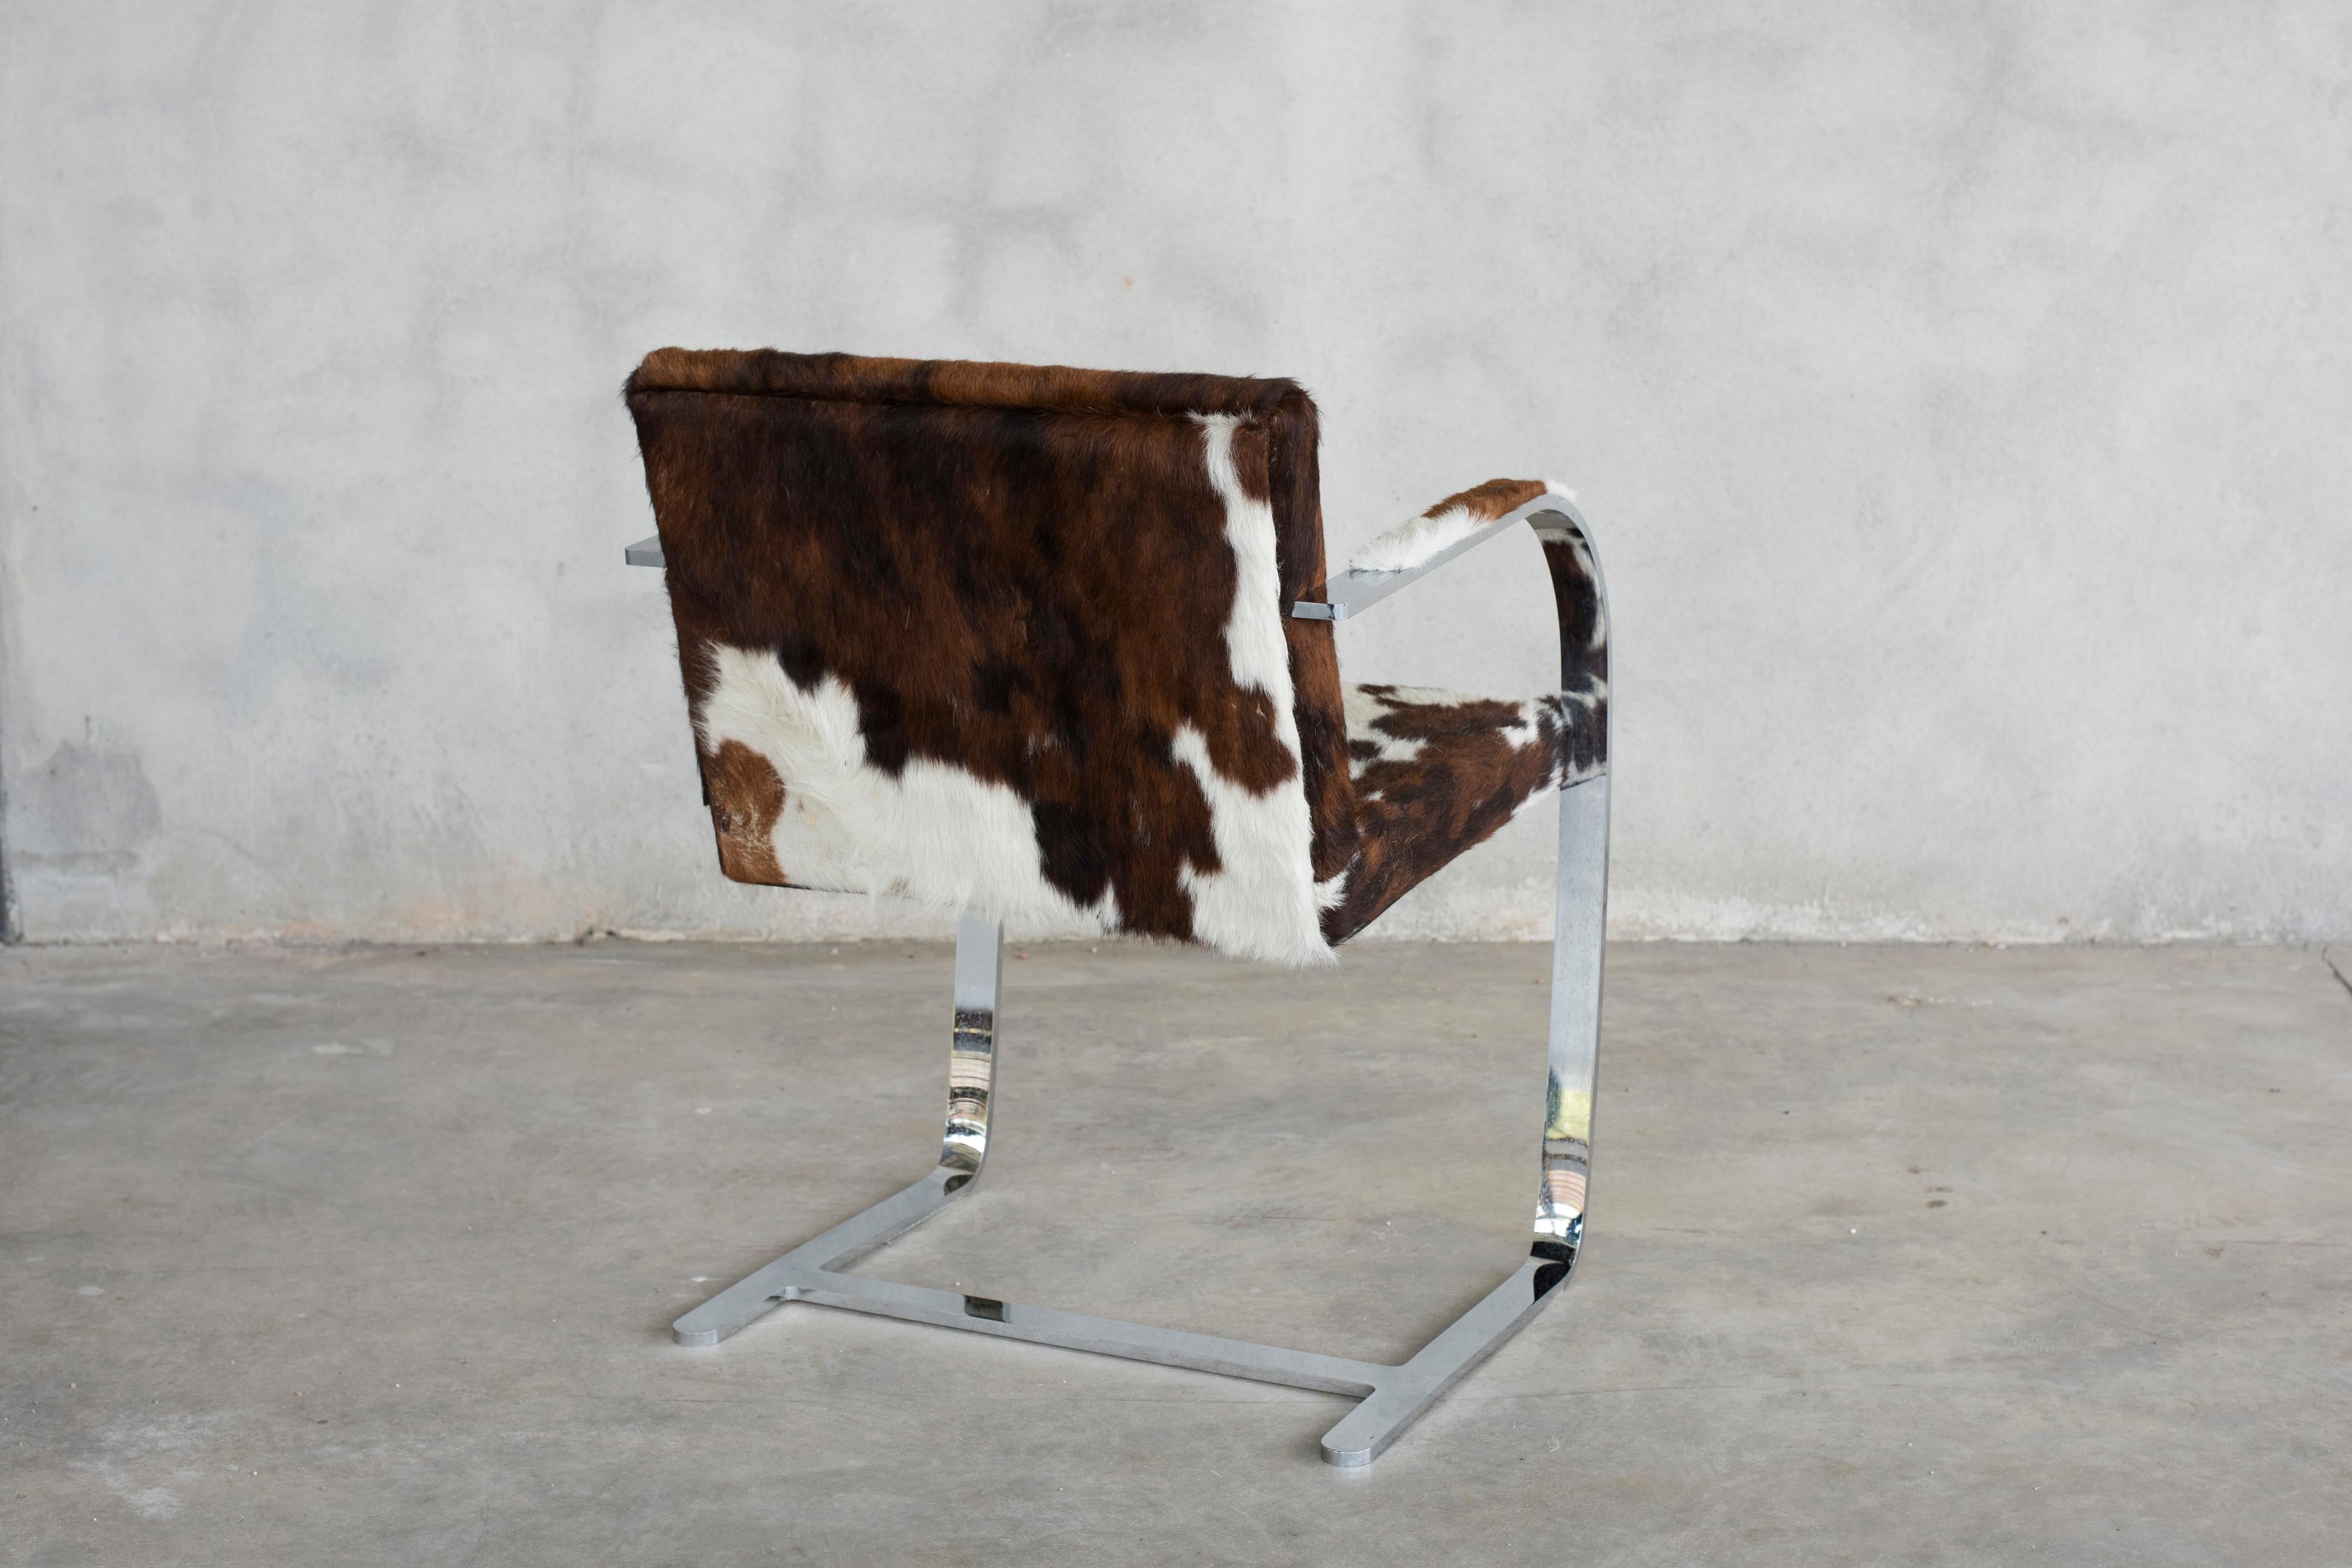 Européen Mies van der Rohe fauteuils Brno 255 en acier chromé plat pour Knoll en vente